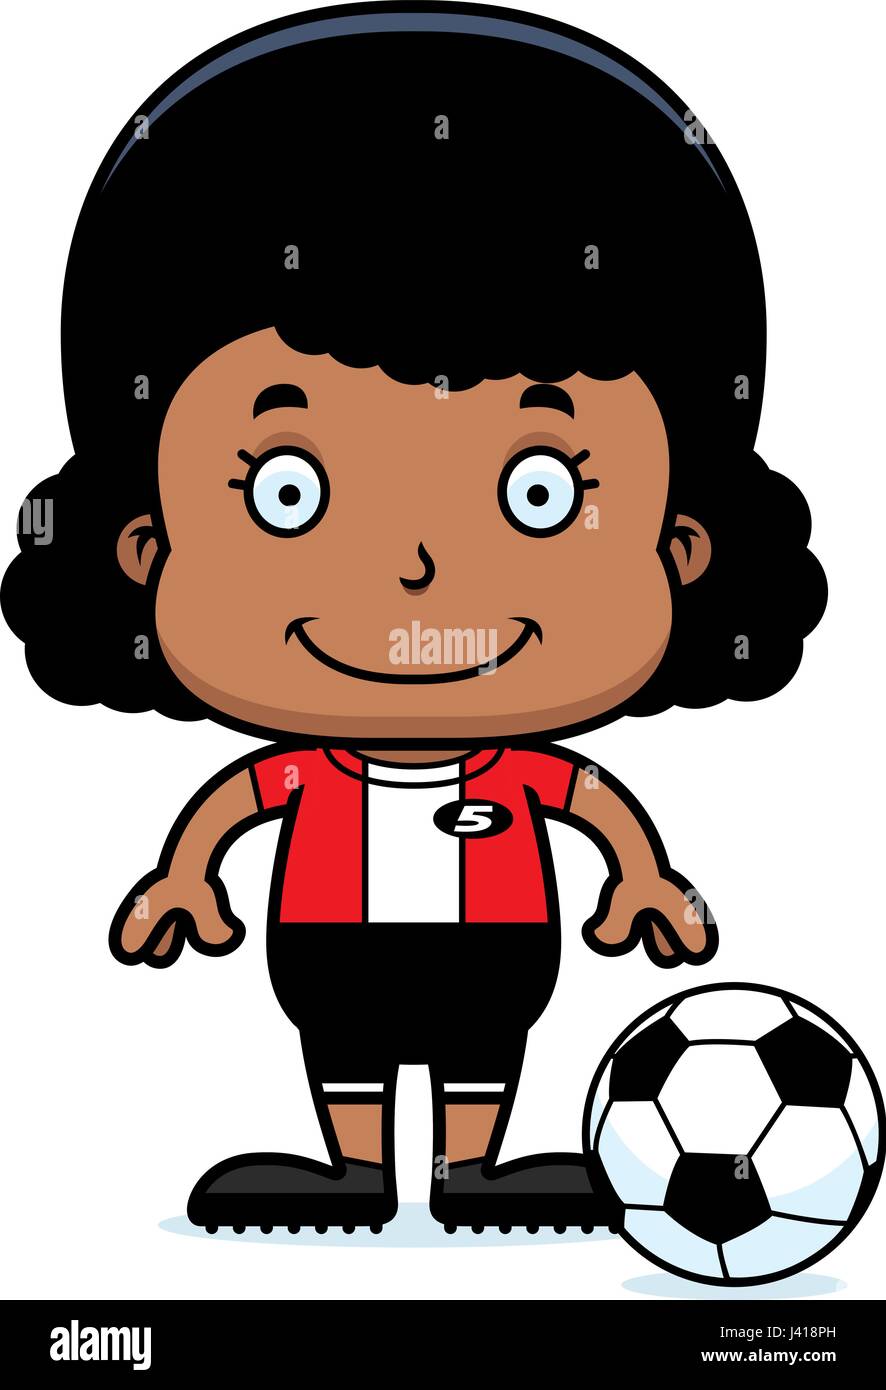 A cartoon soccer player girl smiling. Stock Vector